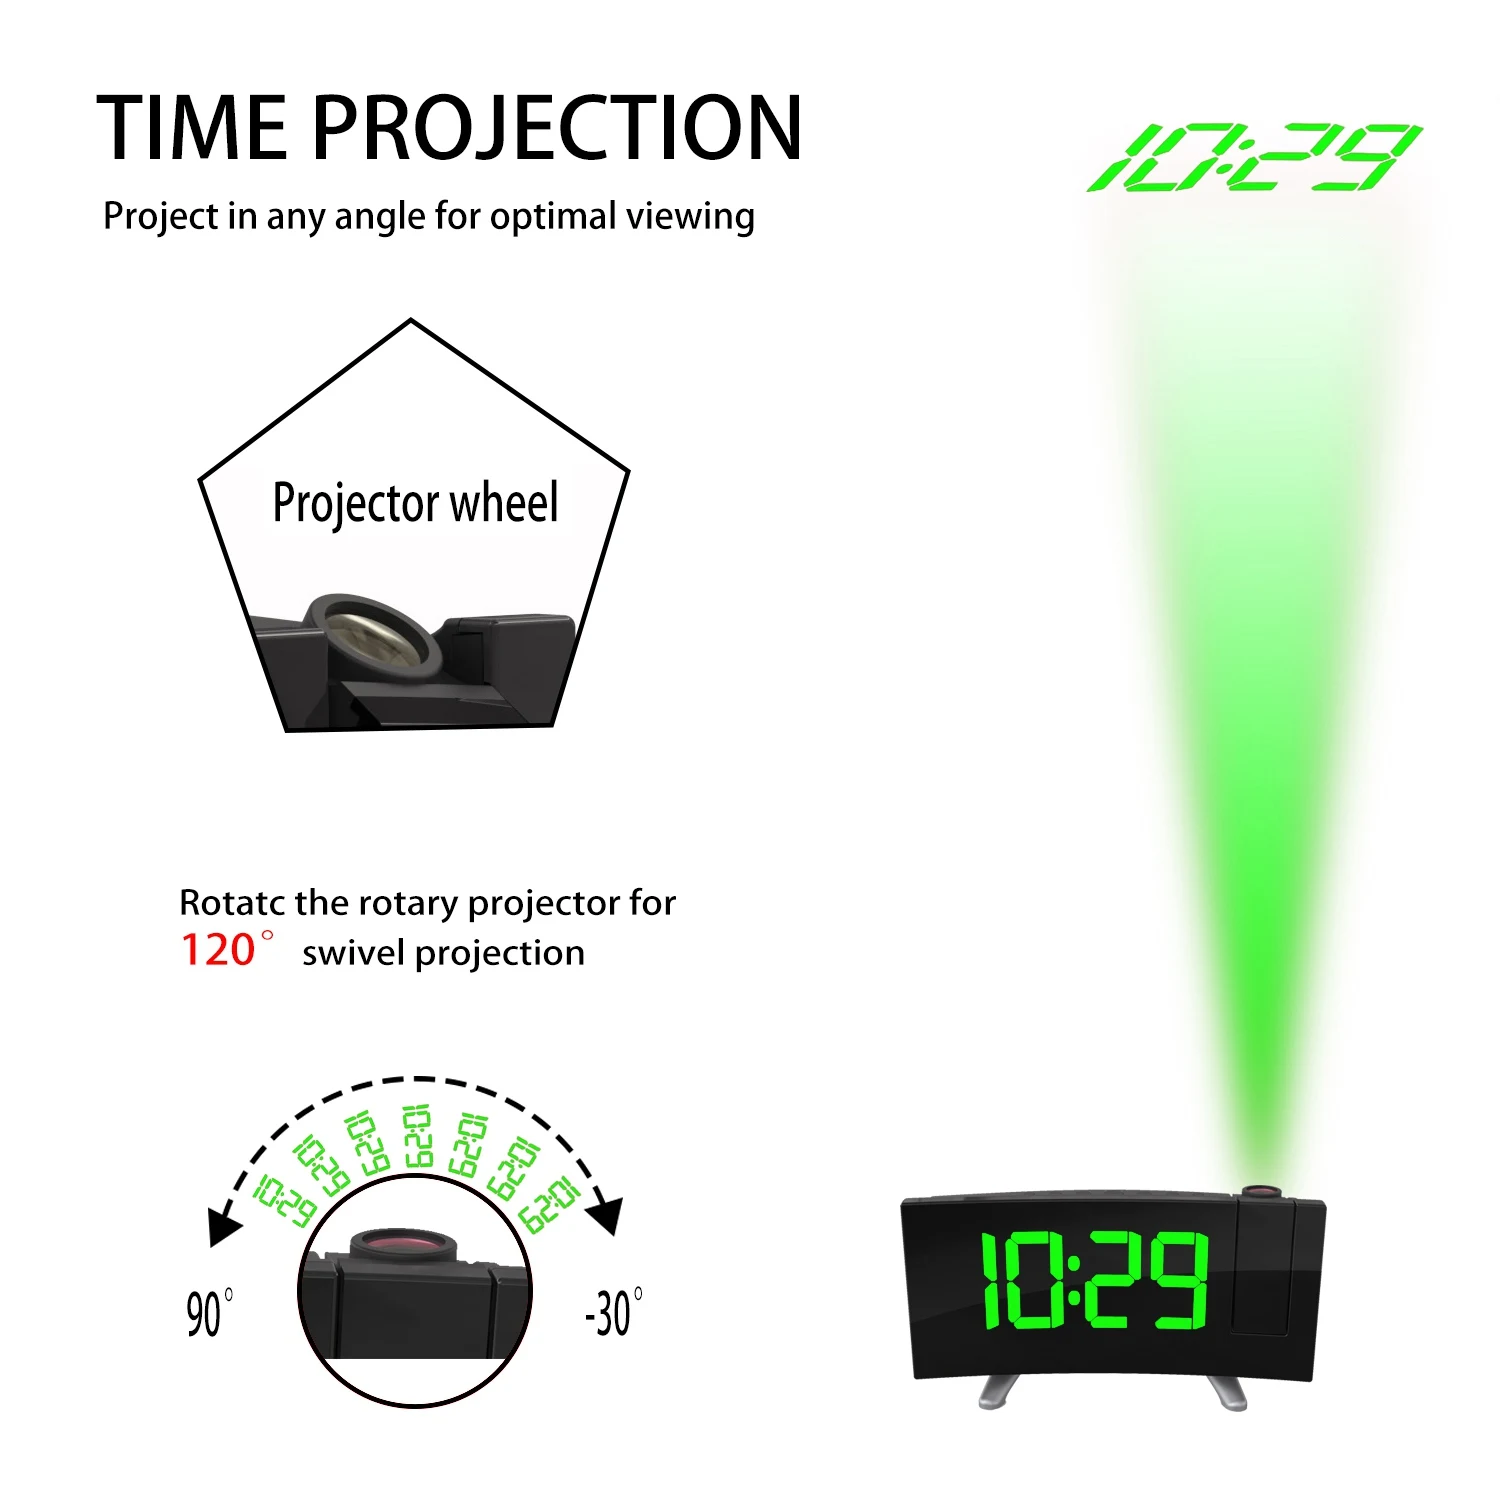 Цифровой радио будильник проекция повтора времени светодиодный дисплей Usb кабель для зарядки 180 градусов настольные настенные Fm радио часы